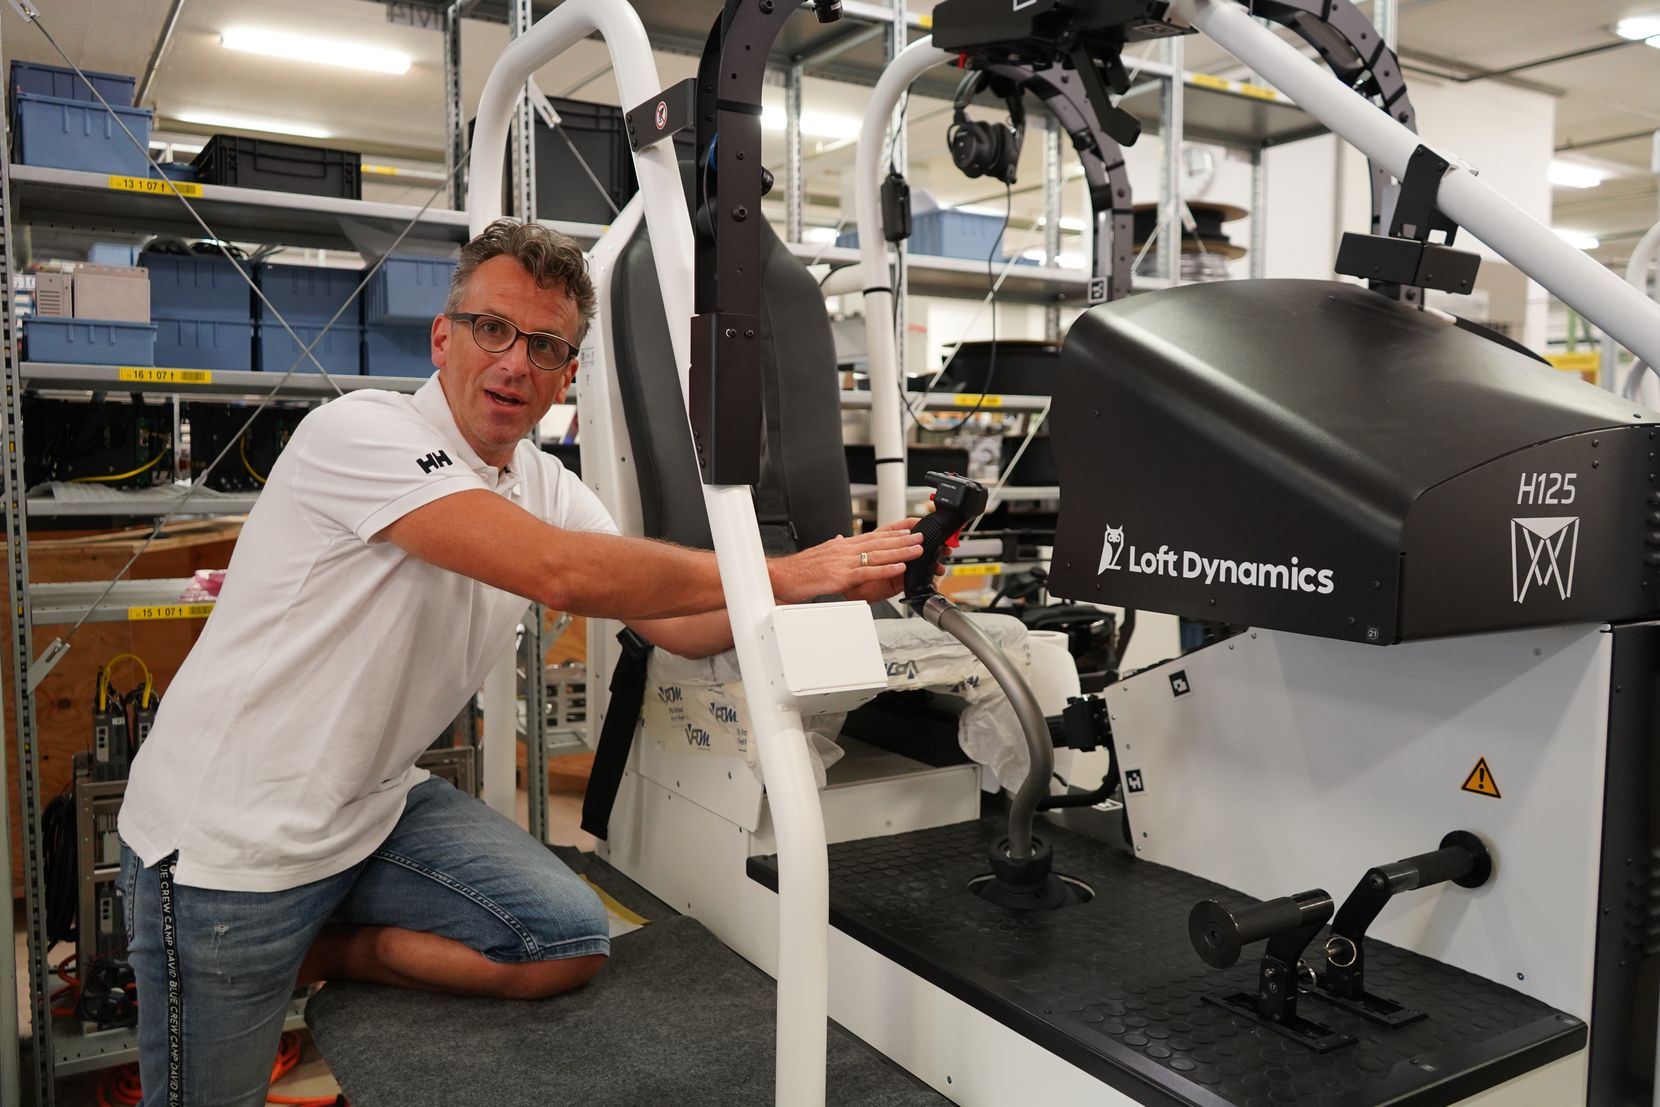 Besuch bei Loft Dynamics in Dübendorf. Firmengründer FabiRiesen führt durch das Unternehmen, das Flugsimulatoren mit VR produziert.